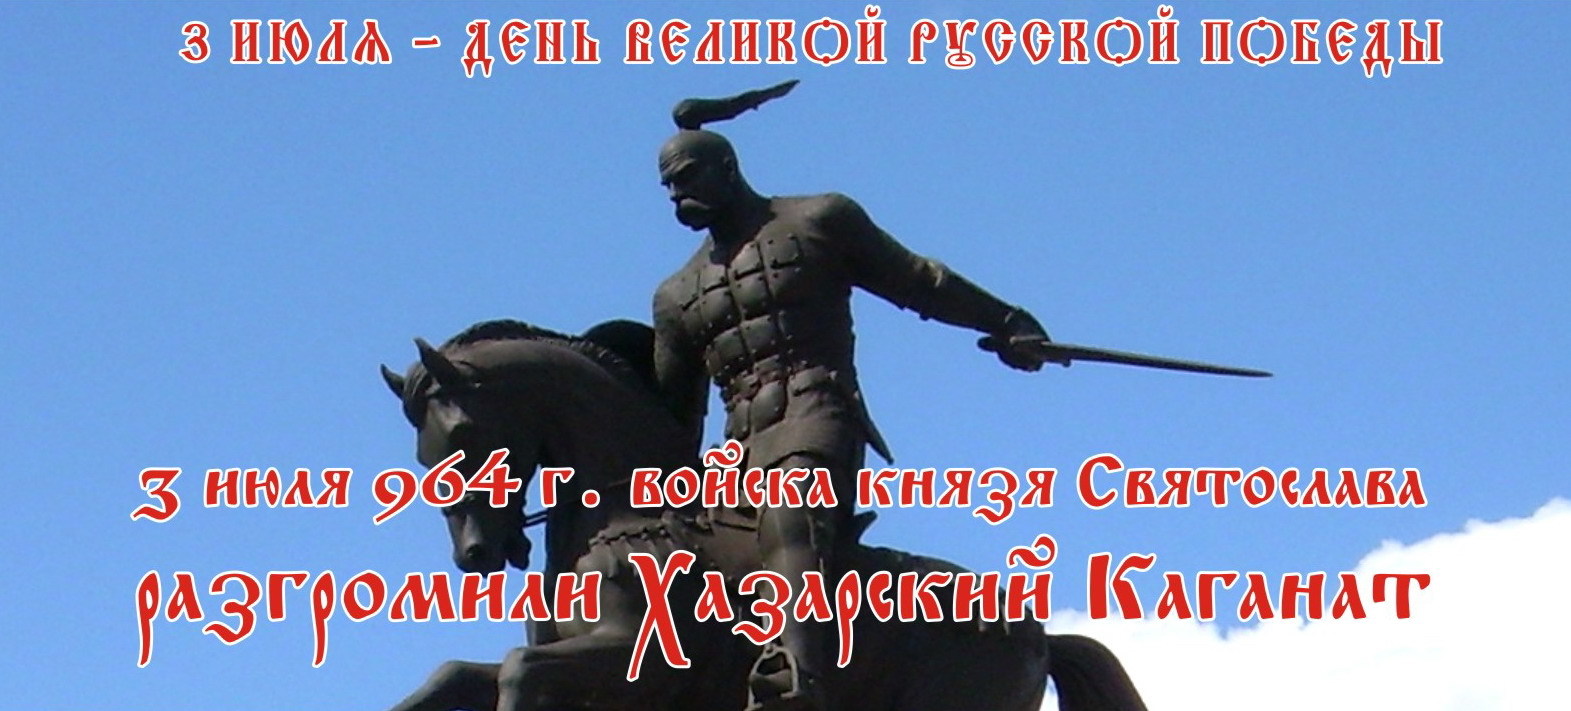 Хазарские праздники. 3 Июля 964 года победа над Хазарским каганатом. 3 Июля разгром Хазарского каганата.